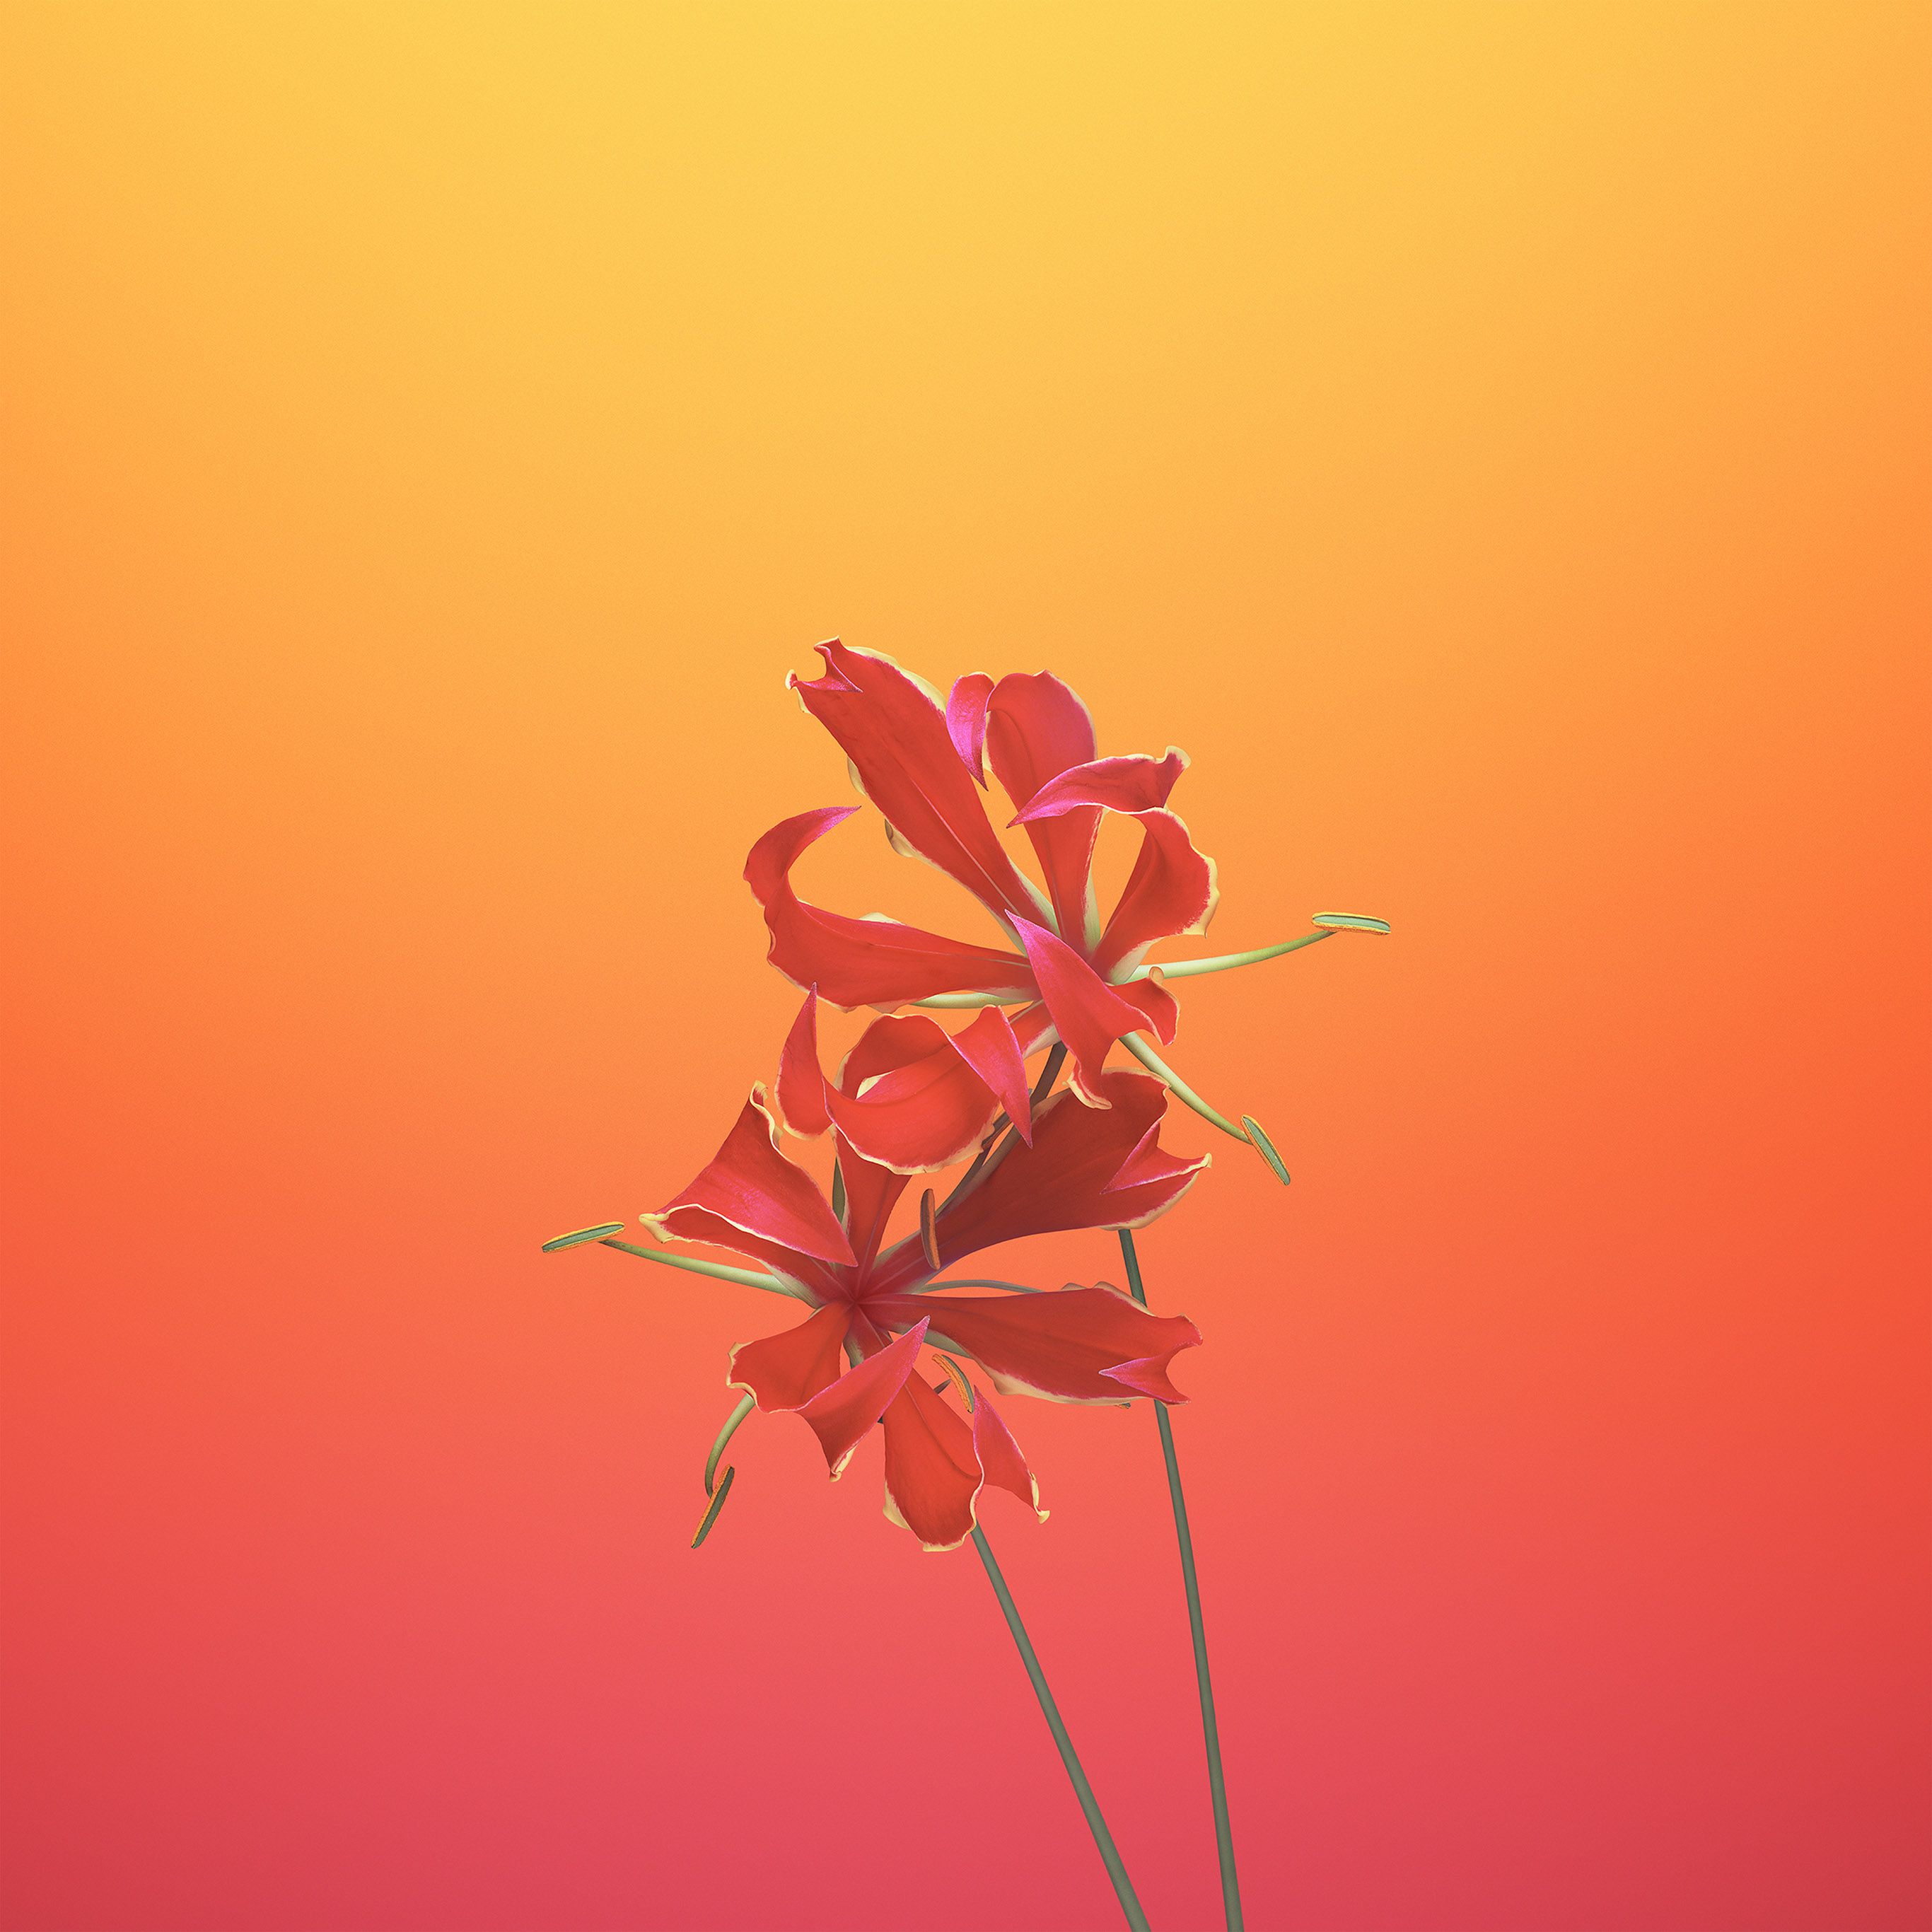 Hình nền hoa Apple iPhone trên WallpaperDog sẽ làm cho màn hình điện thoại của bạn trở nên lung linh và sinh động hơn. Những bức ảnh với hoa tươi đủ màu sắc sẽ mang đến cho bạn cảm giác như đang thưởng thức một bức tranh nghệ thuật trên chiếc iPhone yêu quý của mình.